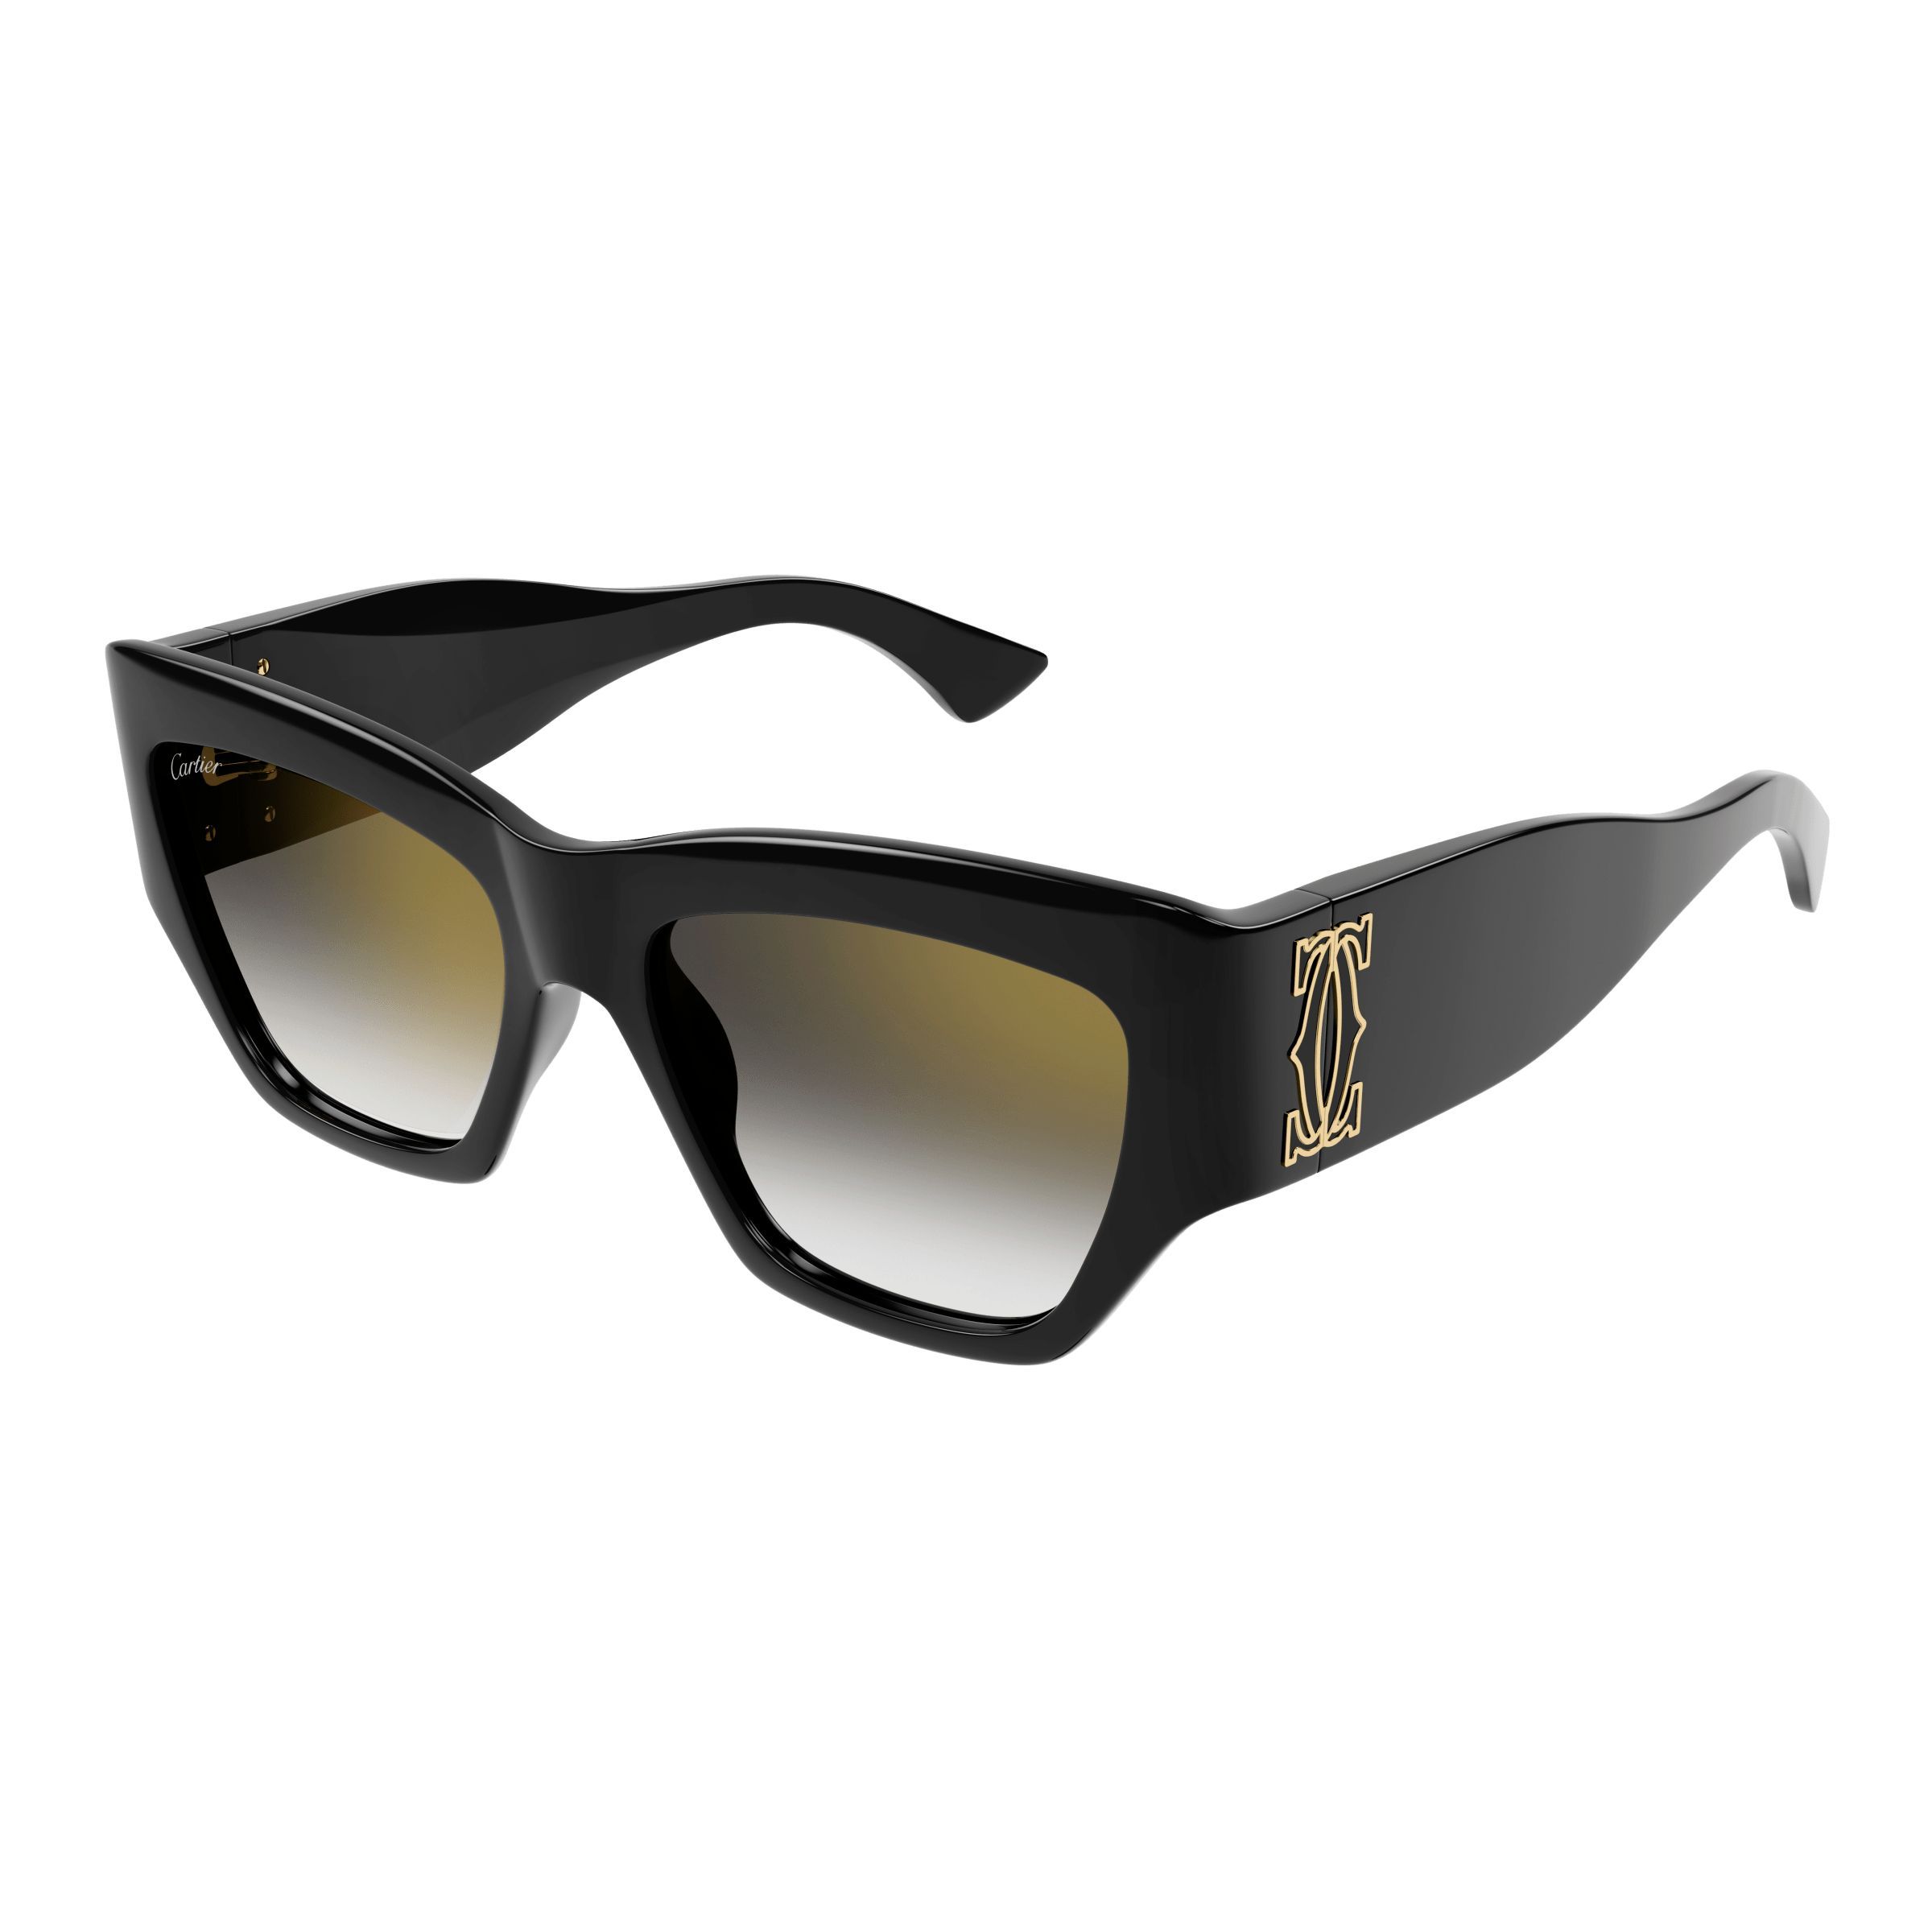 CT0435S Square Sunglasses 001 - size 55